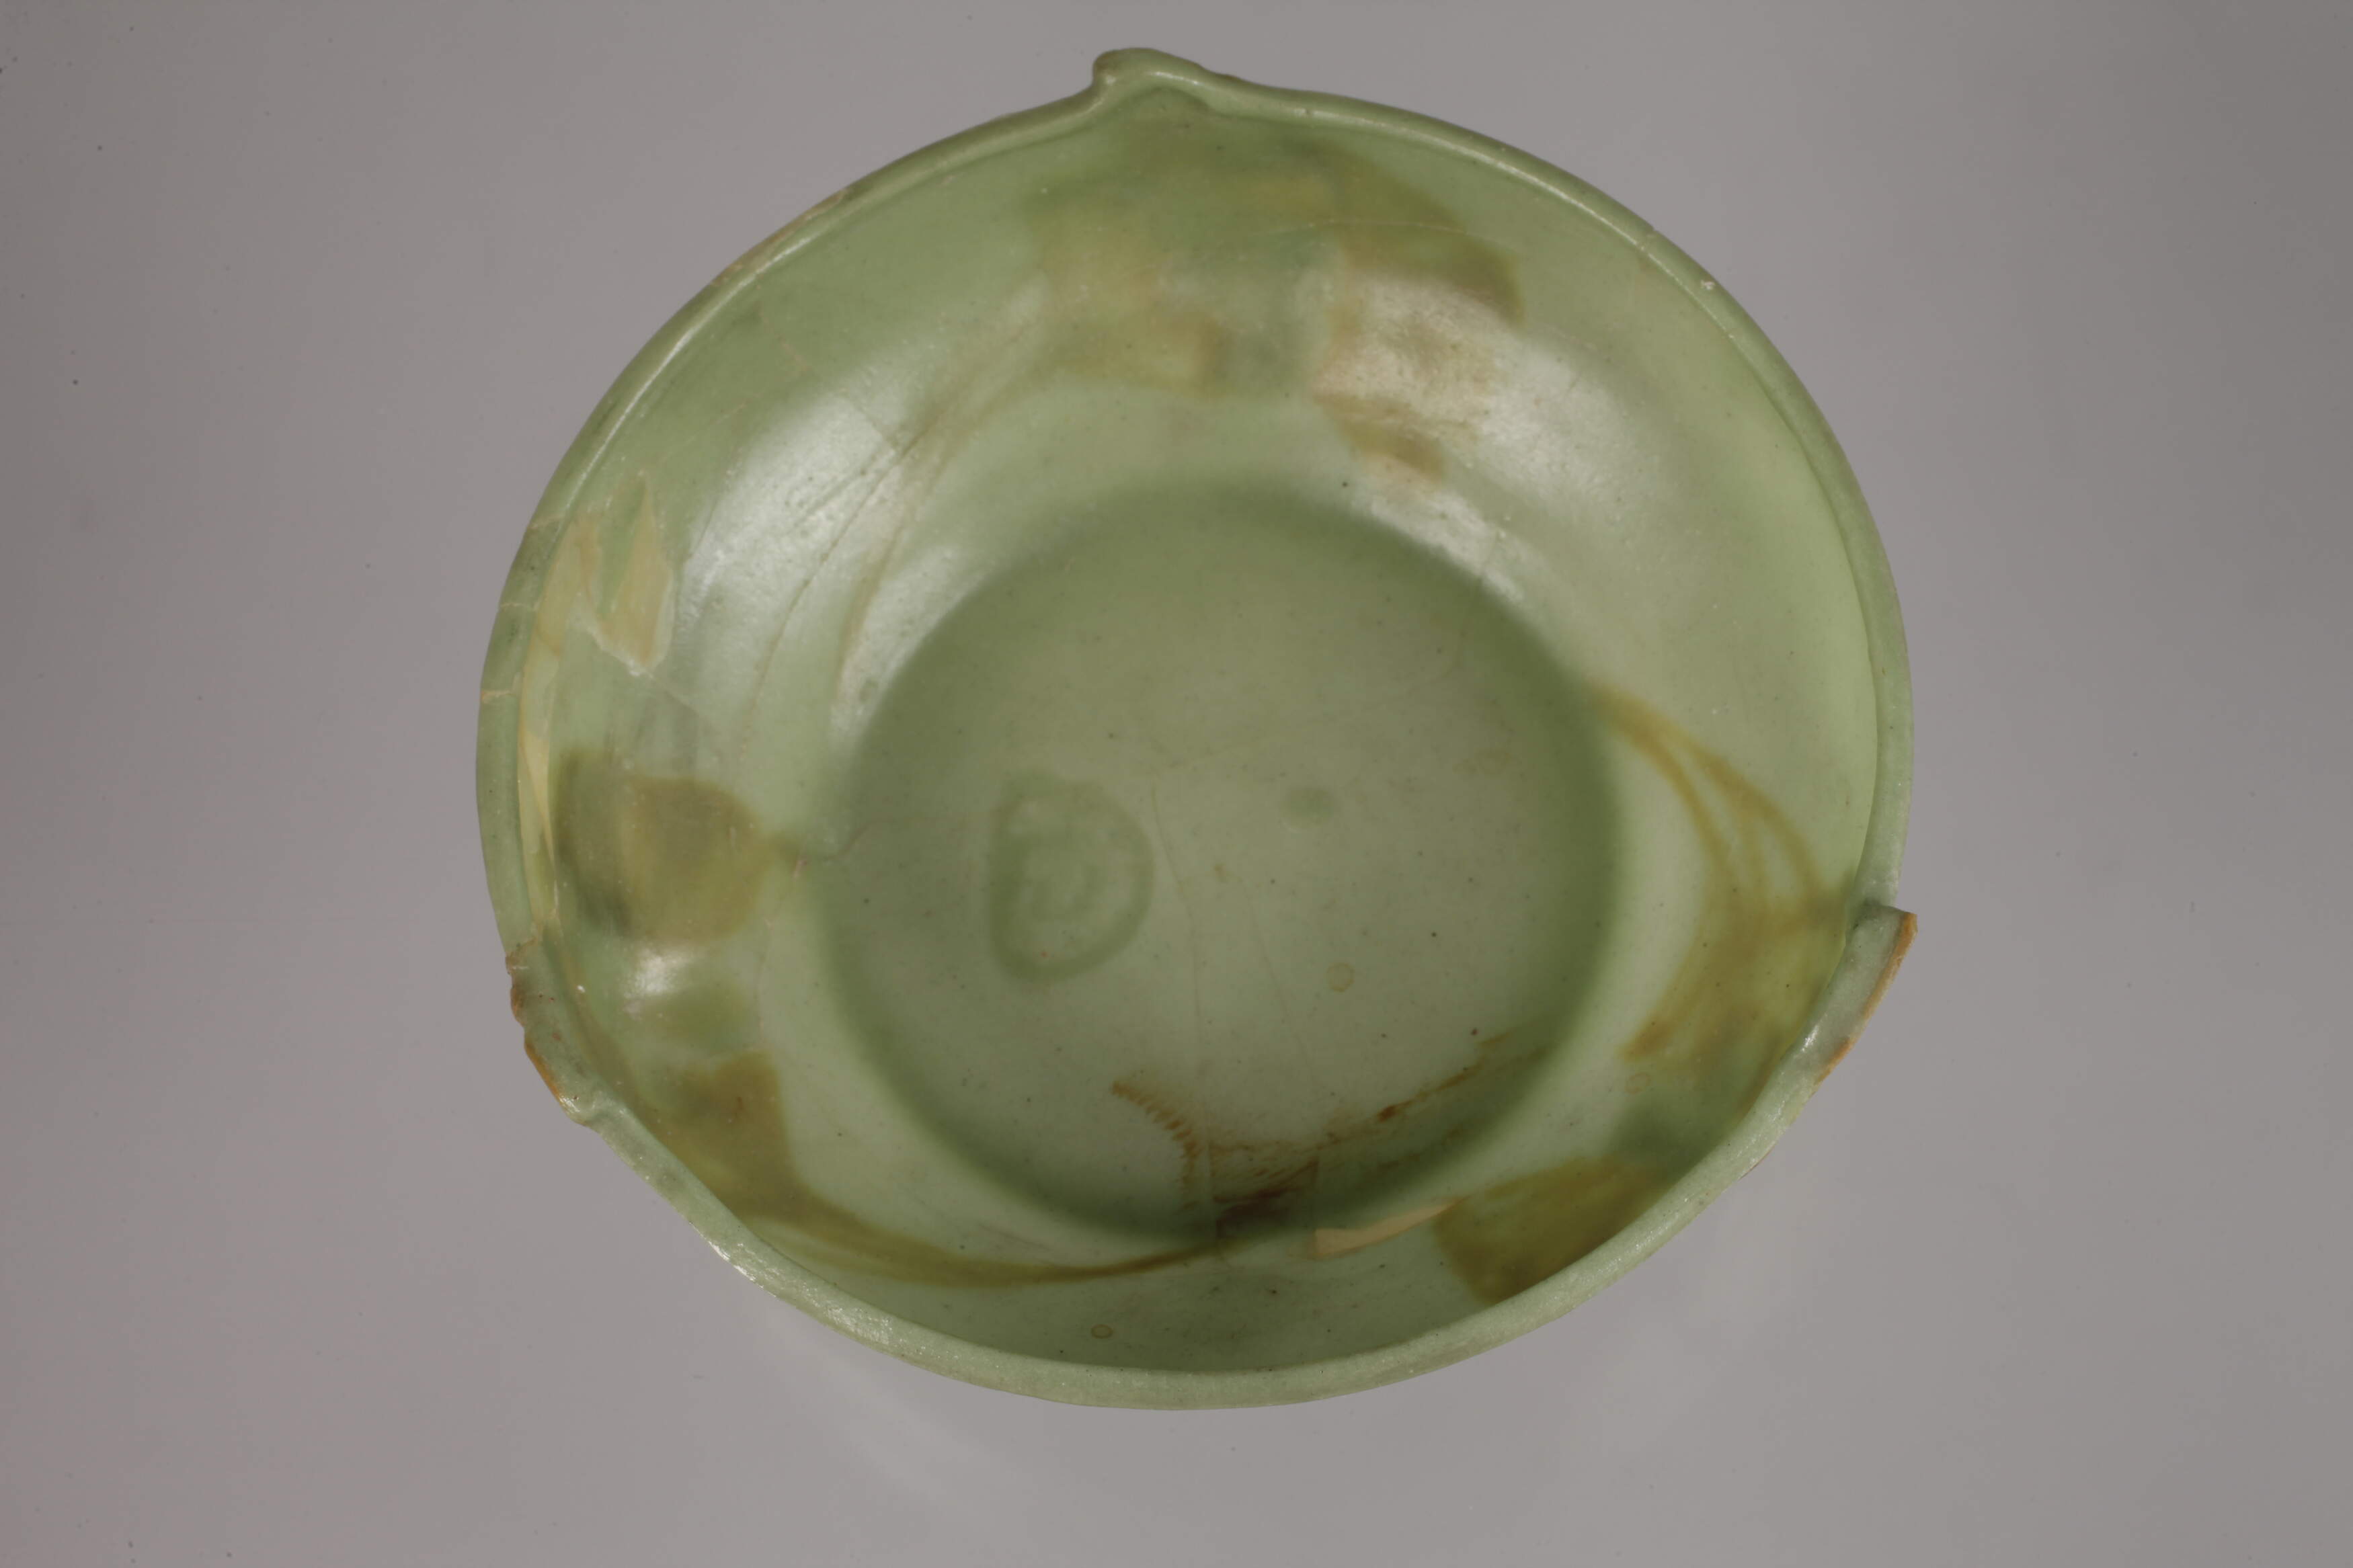 François-Émile Décorchemont Pâte de verre bowl - Image 2 of 4